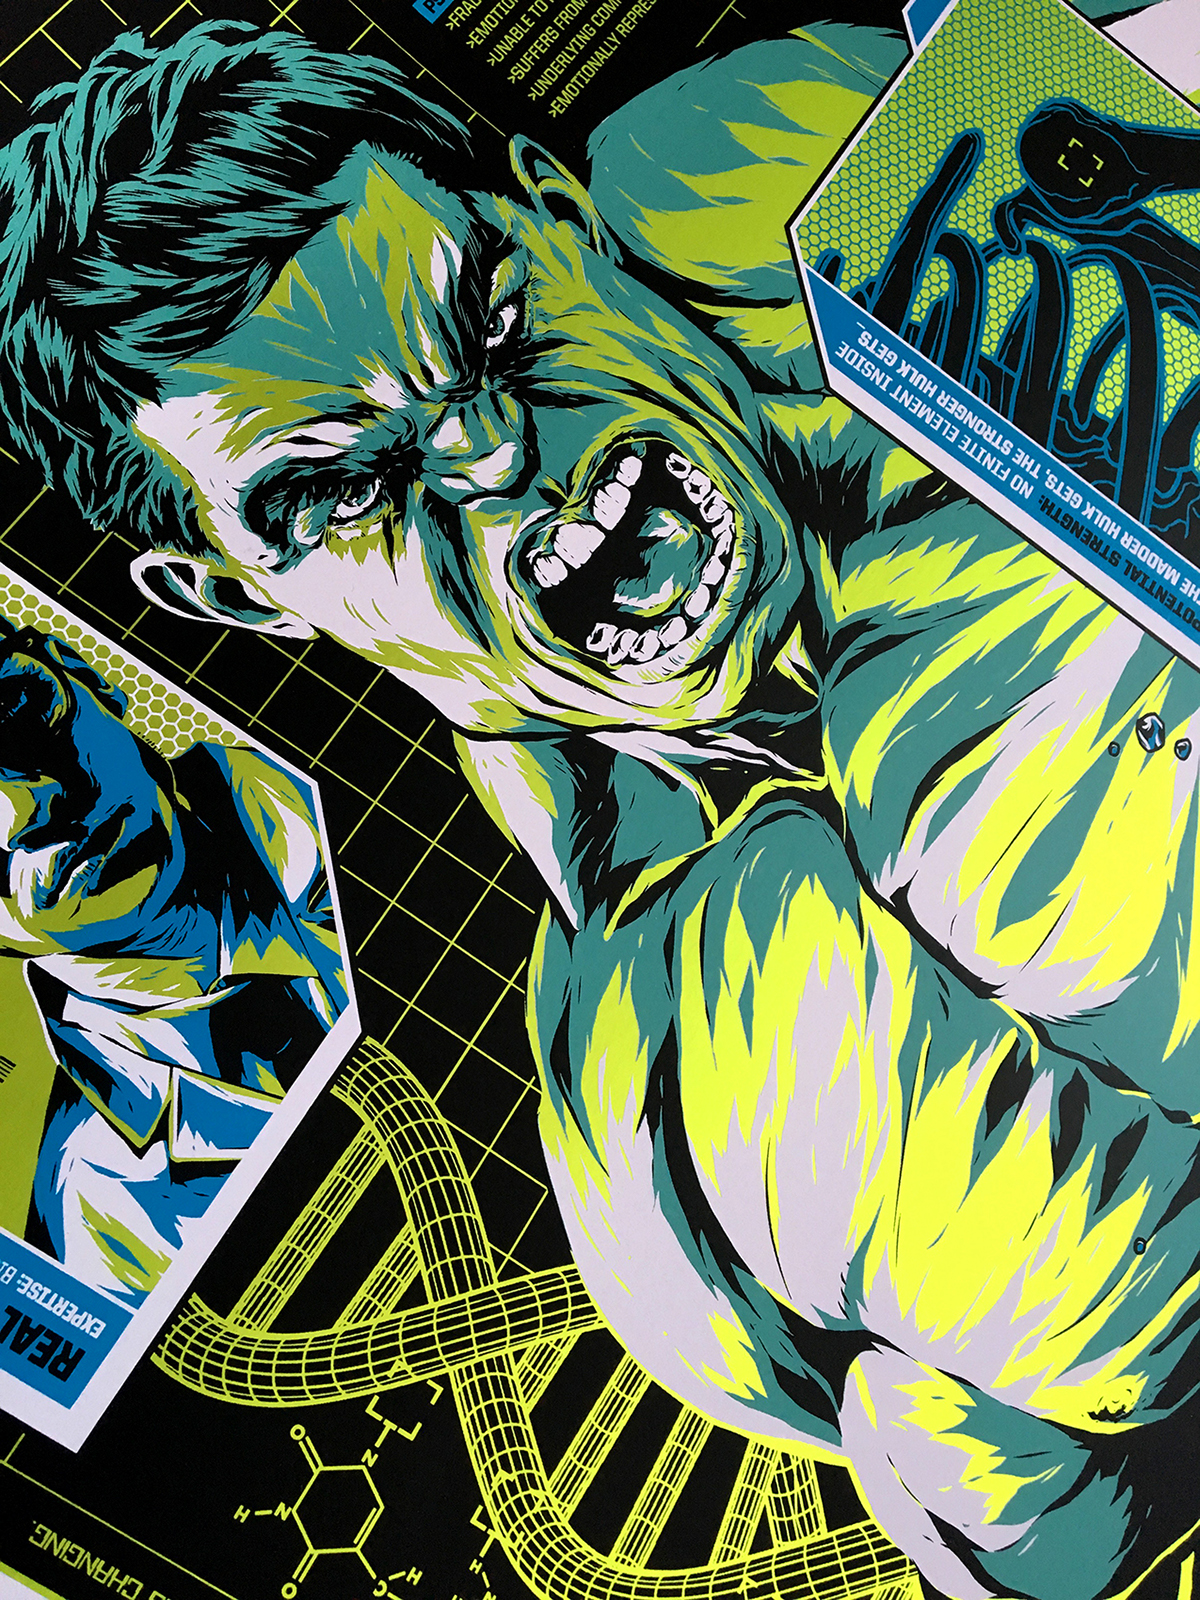 Hulk comics screen print poster diagram incredible hulk hulk comic marvel comics licensed